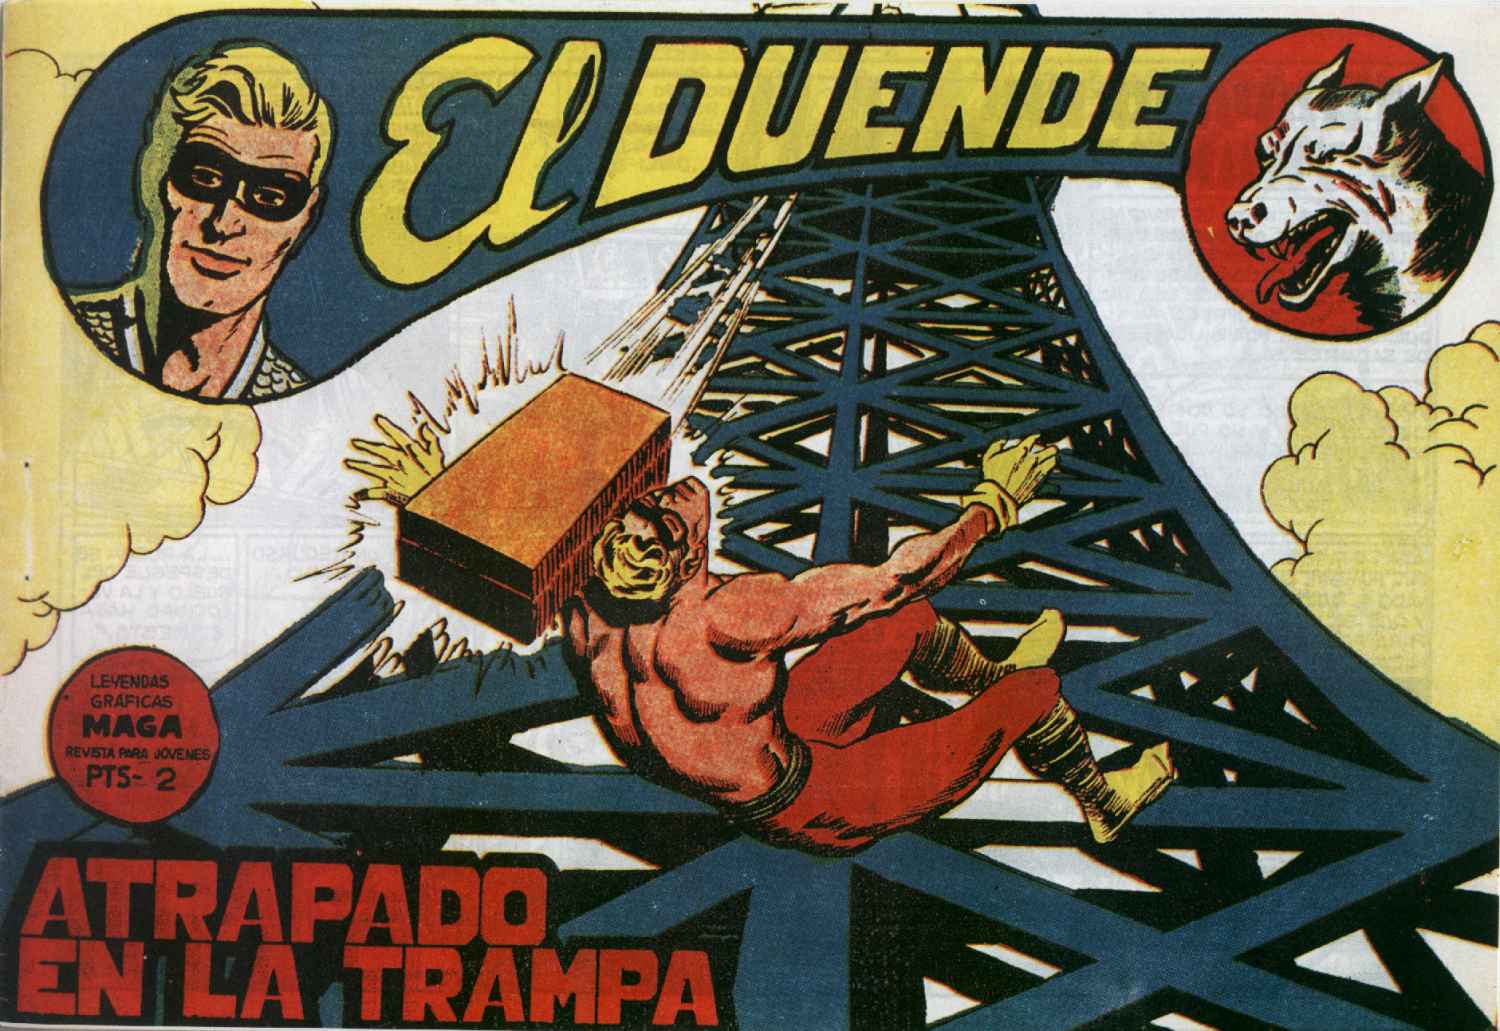 Comic Book Cover For El Duende 31 - Atrapado en la trampa